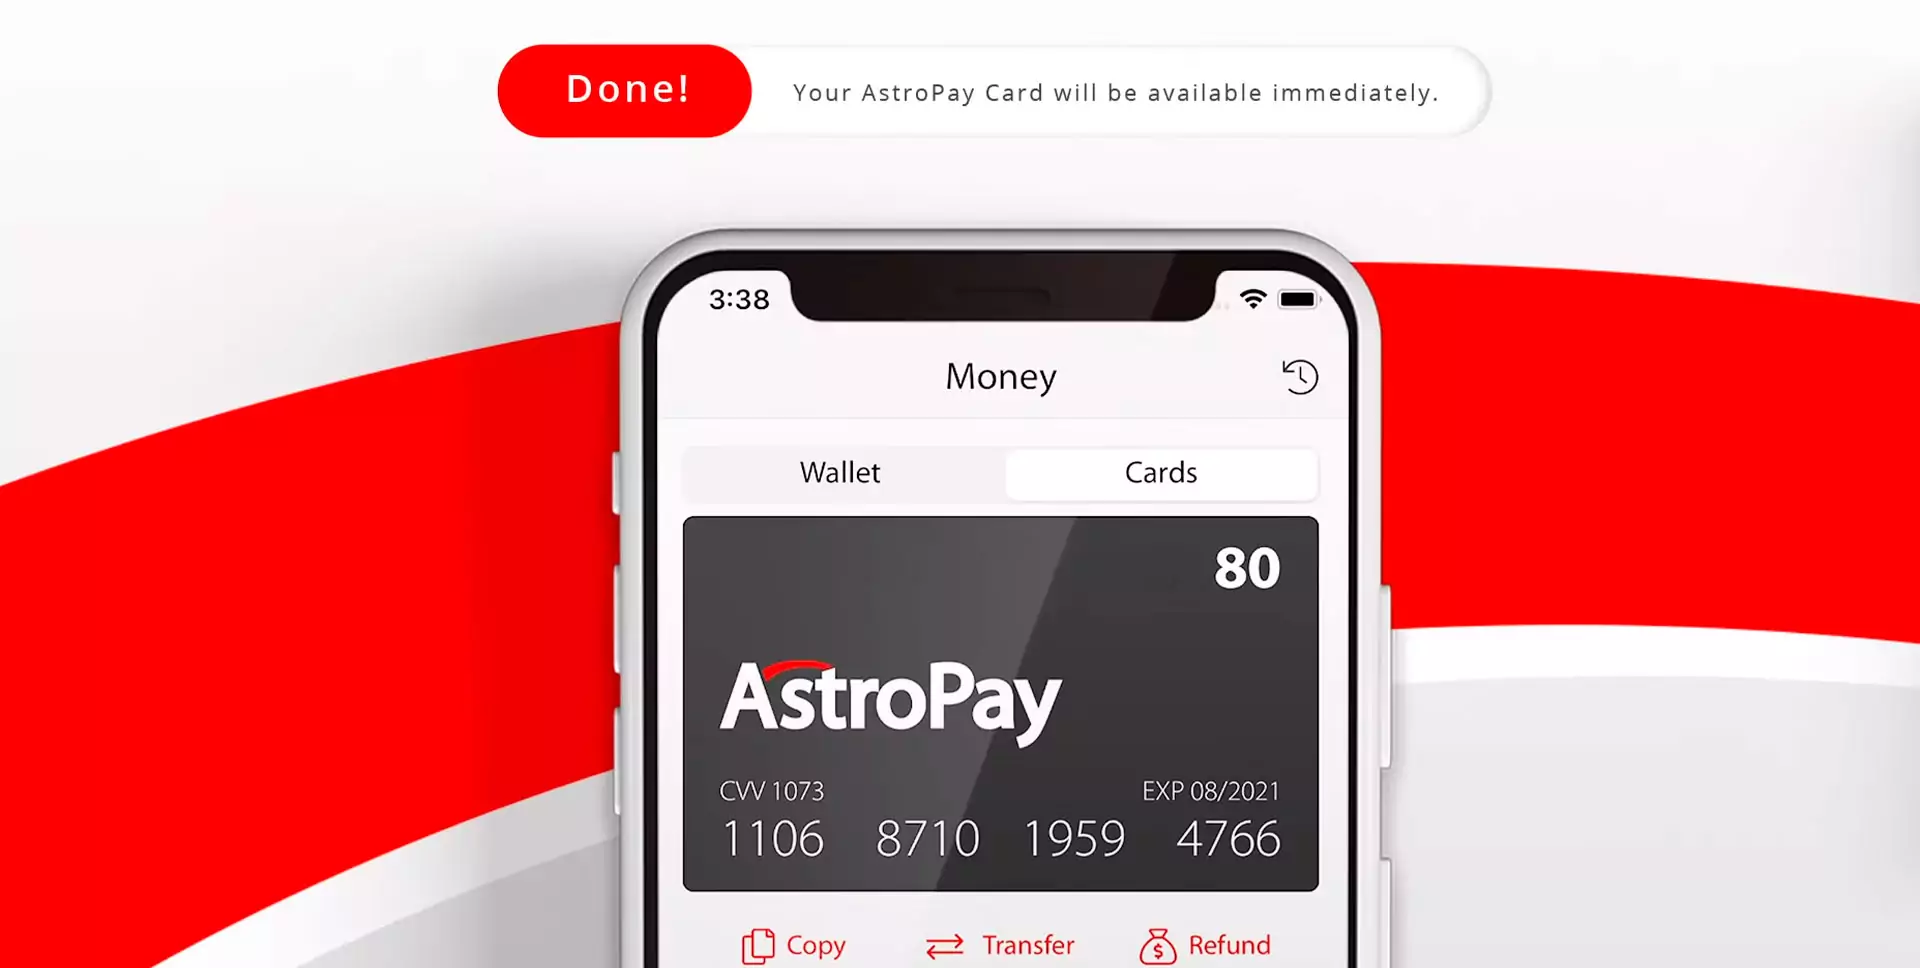 अब आपके पास अपना Astropay कार्ड है और आप क्रिकेट सट्टेबाजी साइटों पर जमा कर सकते हैं।